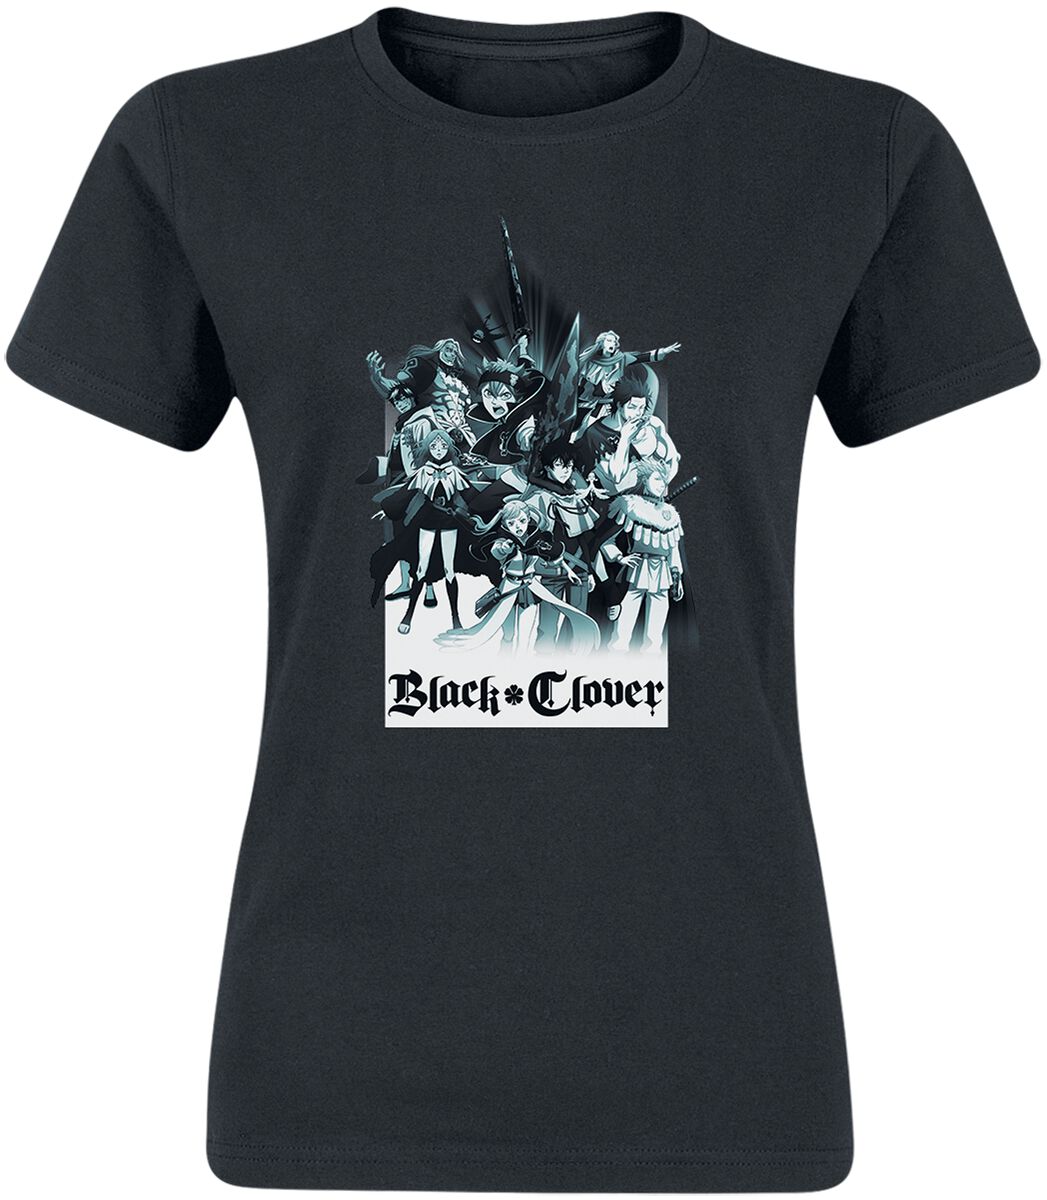 T-Shirt Manches courtes de Black Clover - White Light - S à XXL - pour Femme - noir